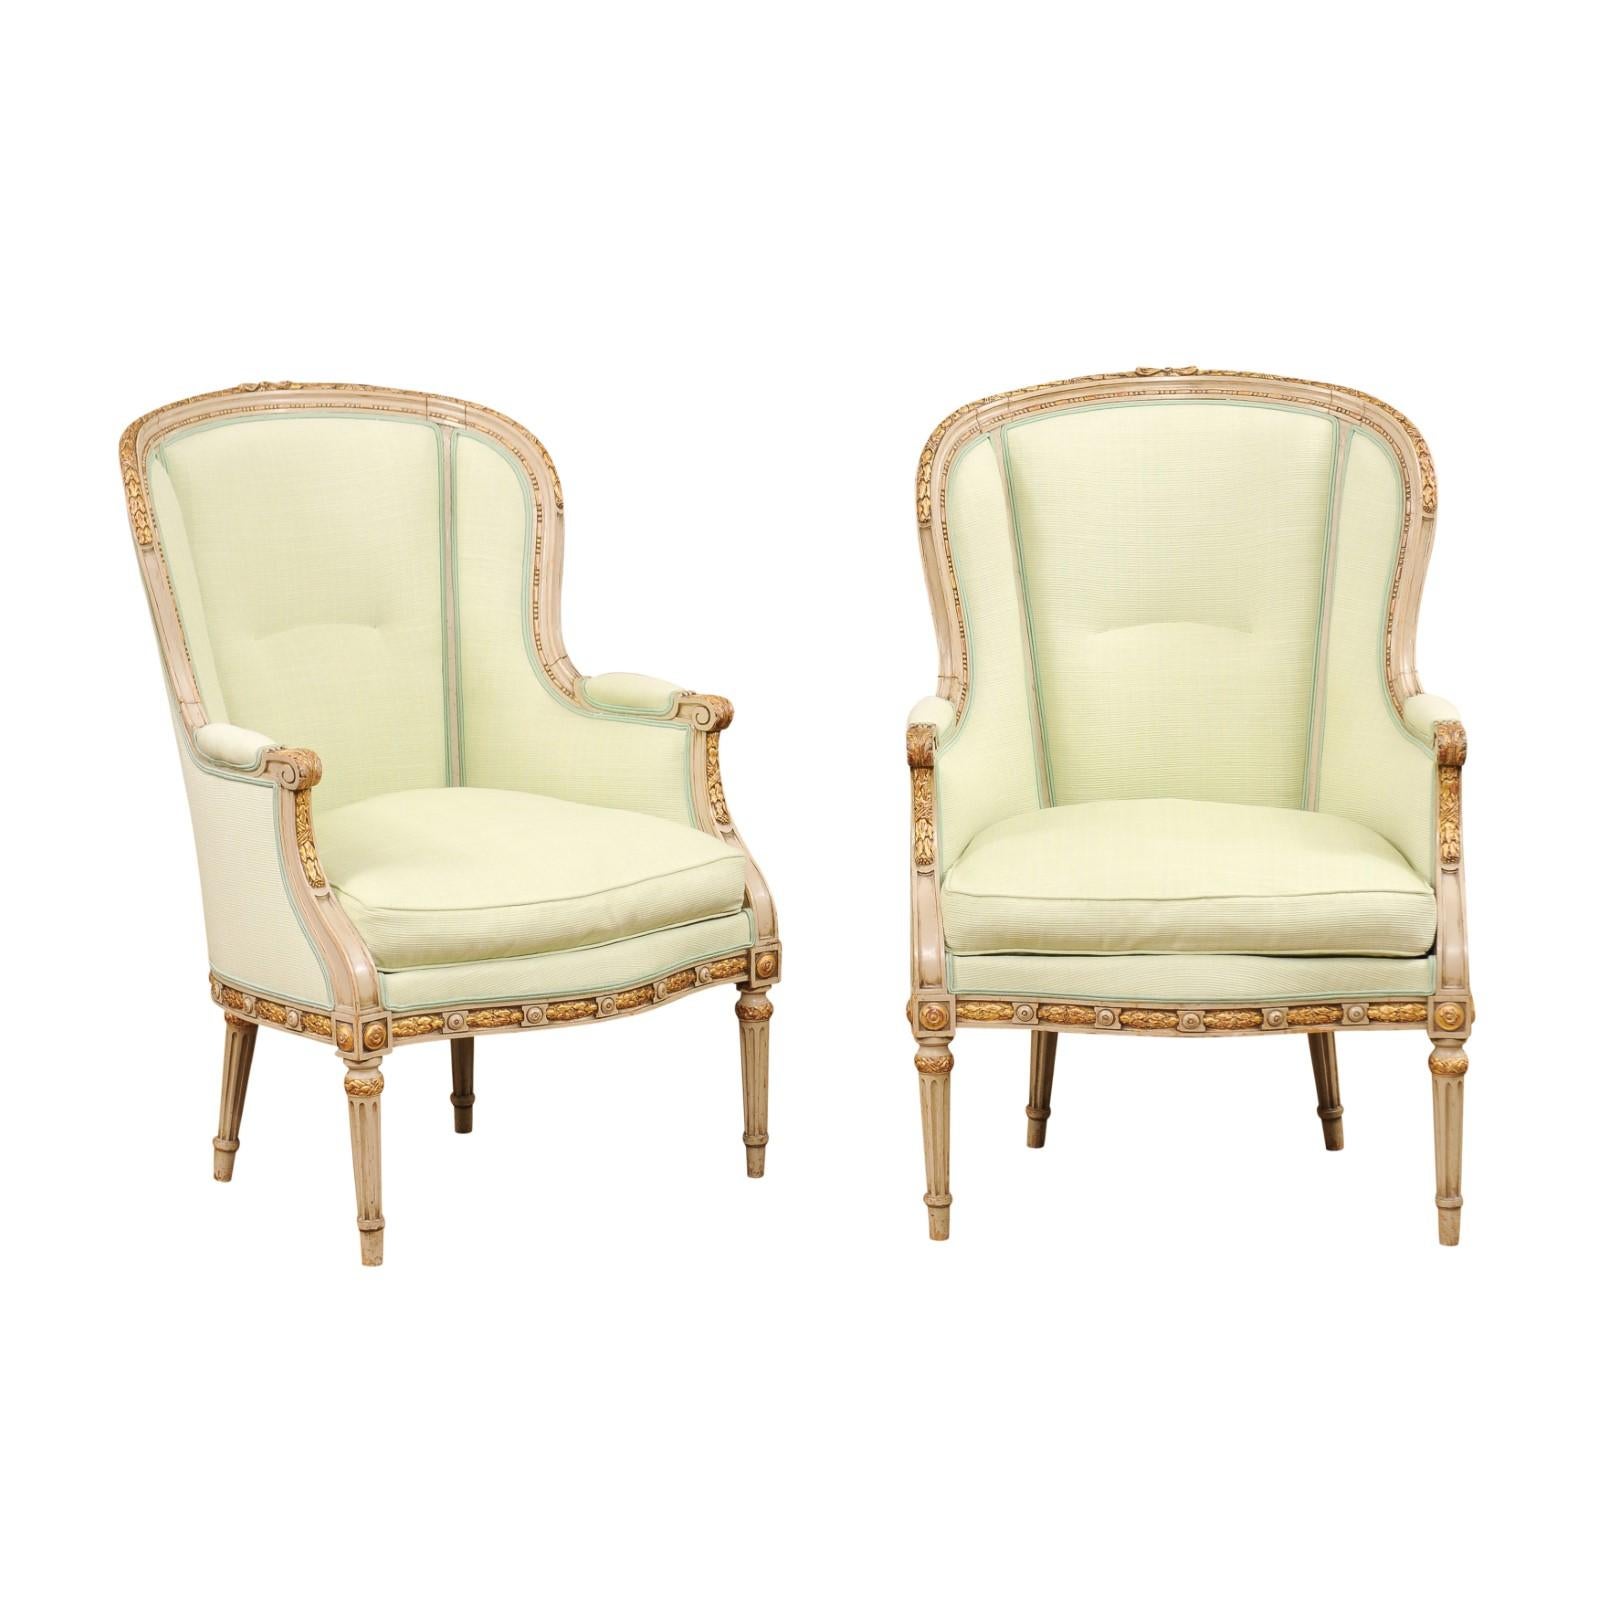 Paire de chaises bergères de style Louis XVI en bois peint et doré à la feuille, datant du début du 20e siècle, avec une tapisserie double vert jaune, des bras à volutes, du feuillage sculpté et des pieds cannelés. Créée en France au tournant du